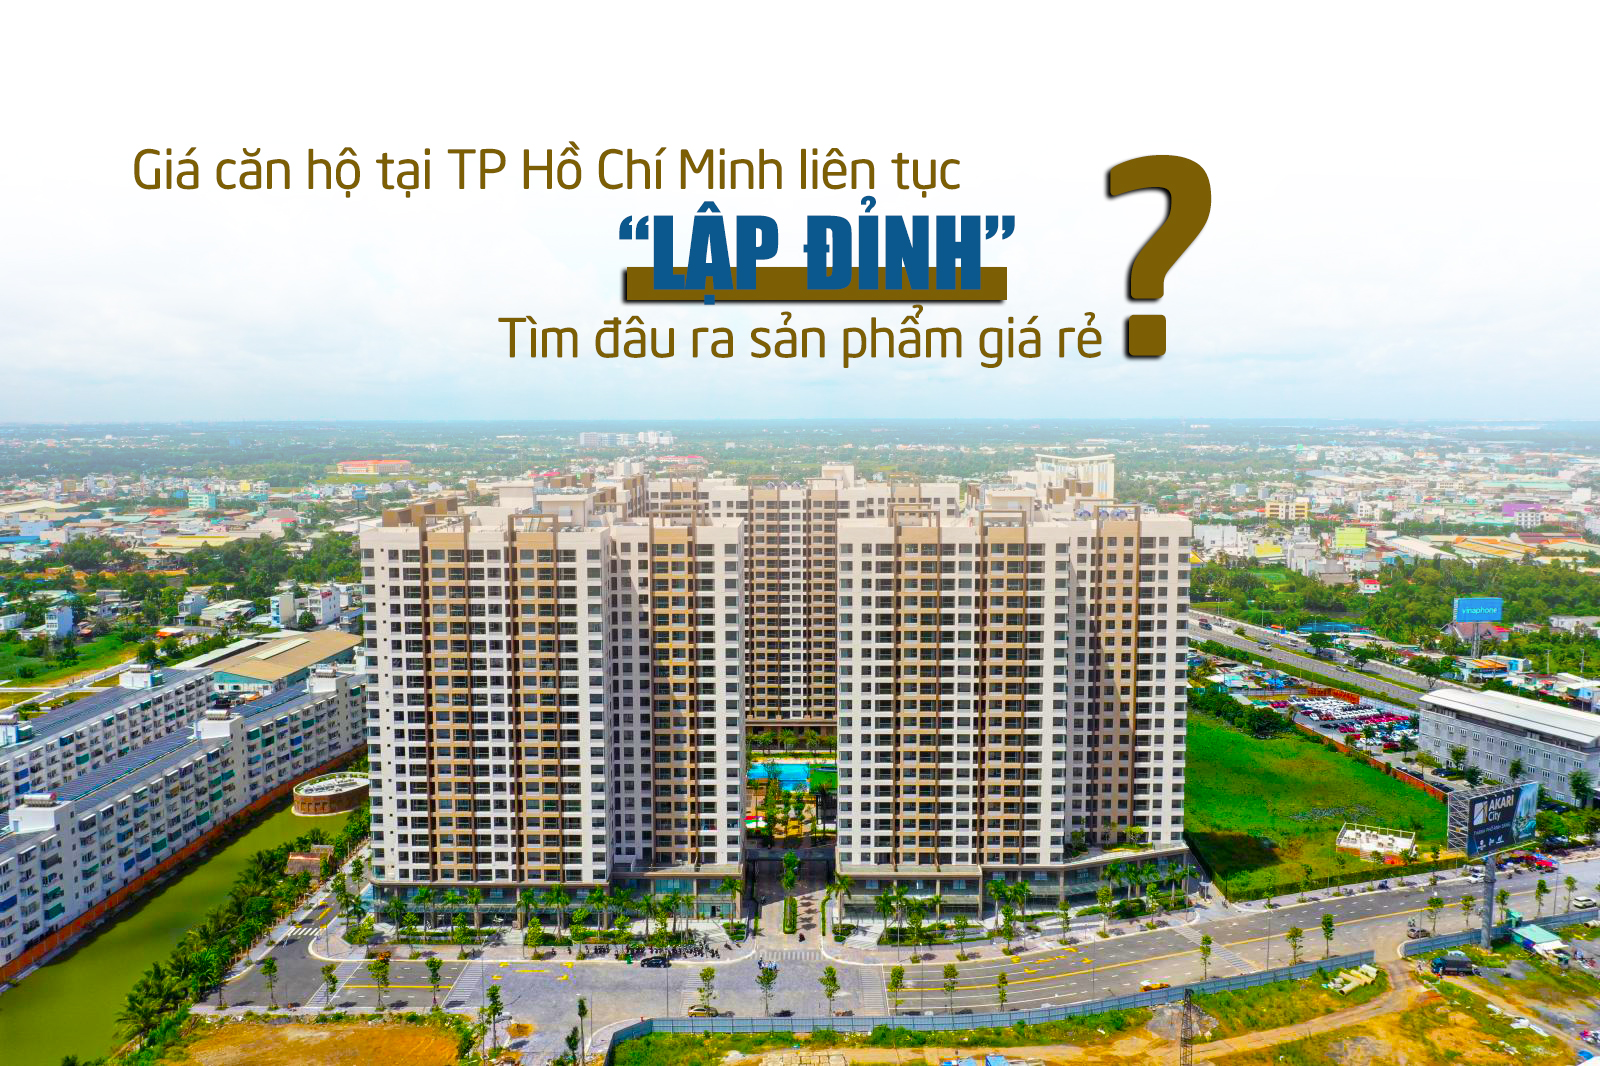 Giá căn hộ tại TP Hồ Chí Minh liên tục lập “đỉnh” mới, tìm đâu ra sản phẩm giá rẻ?